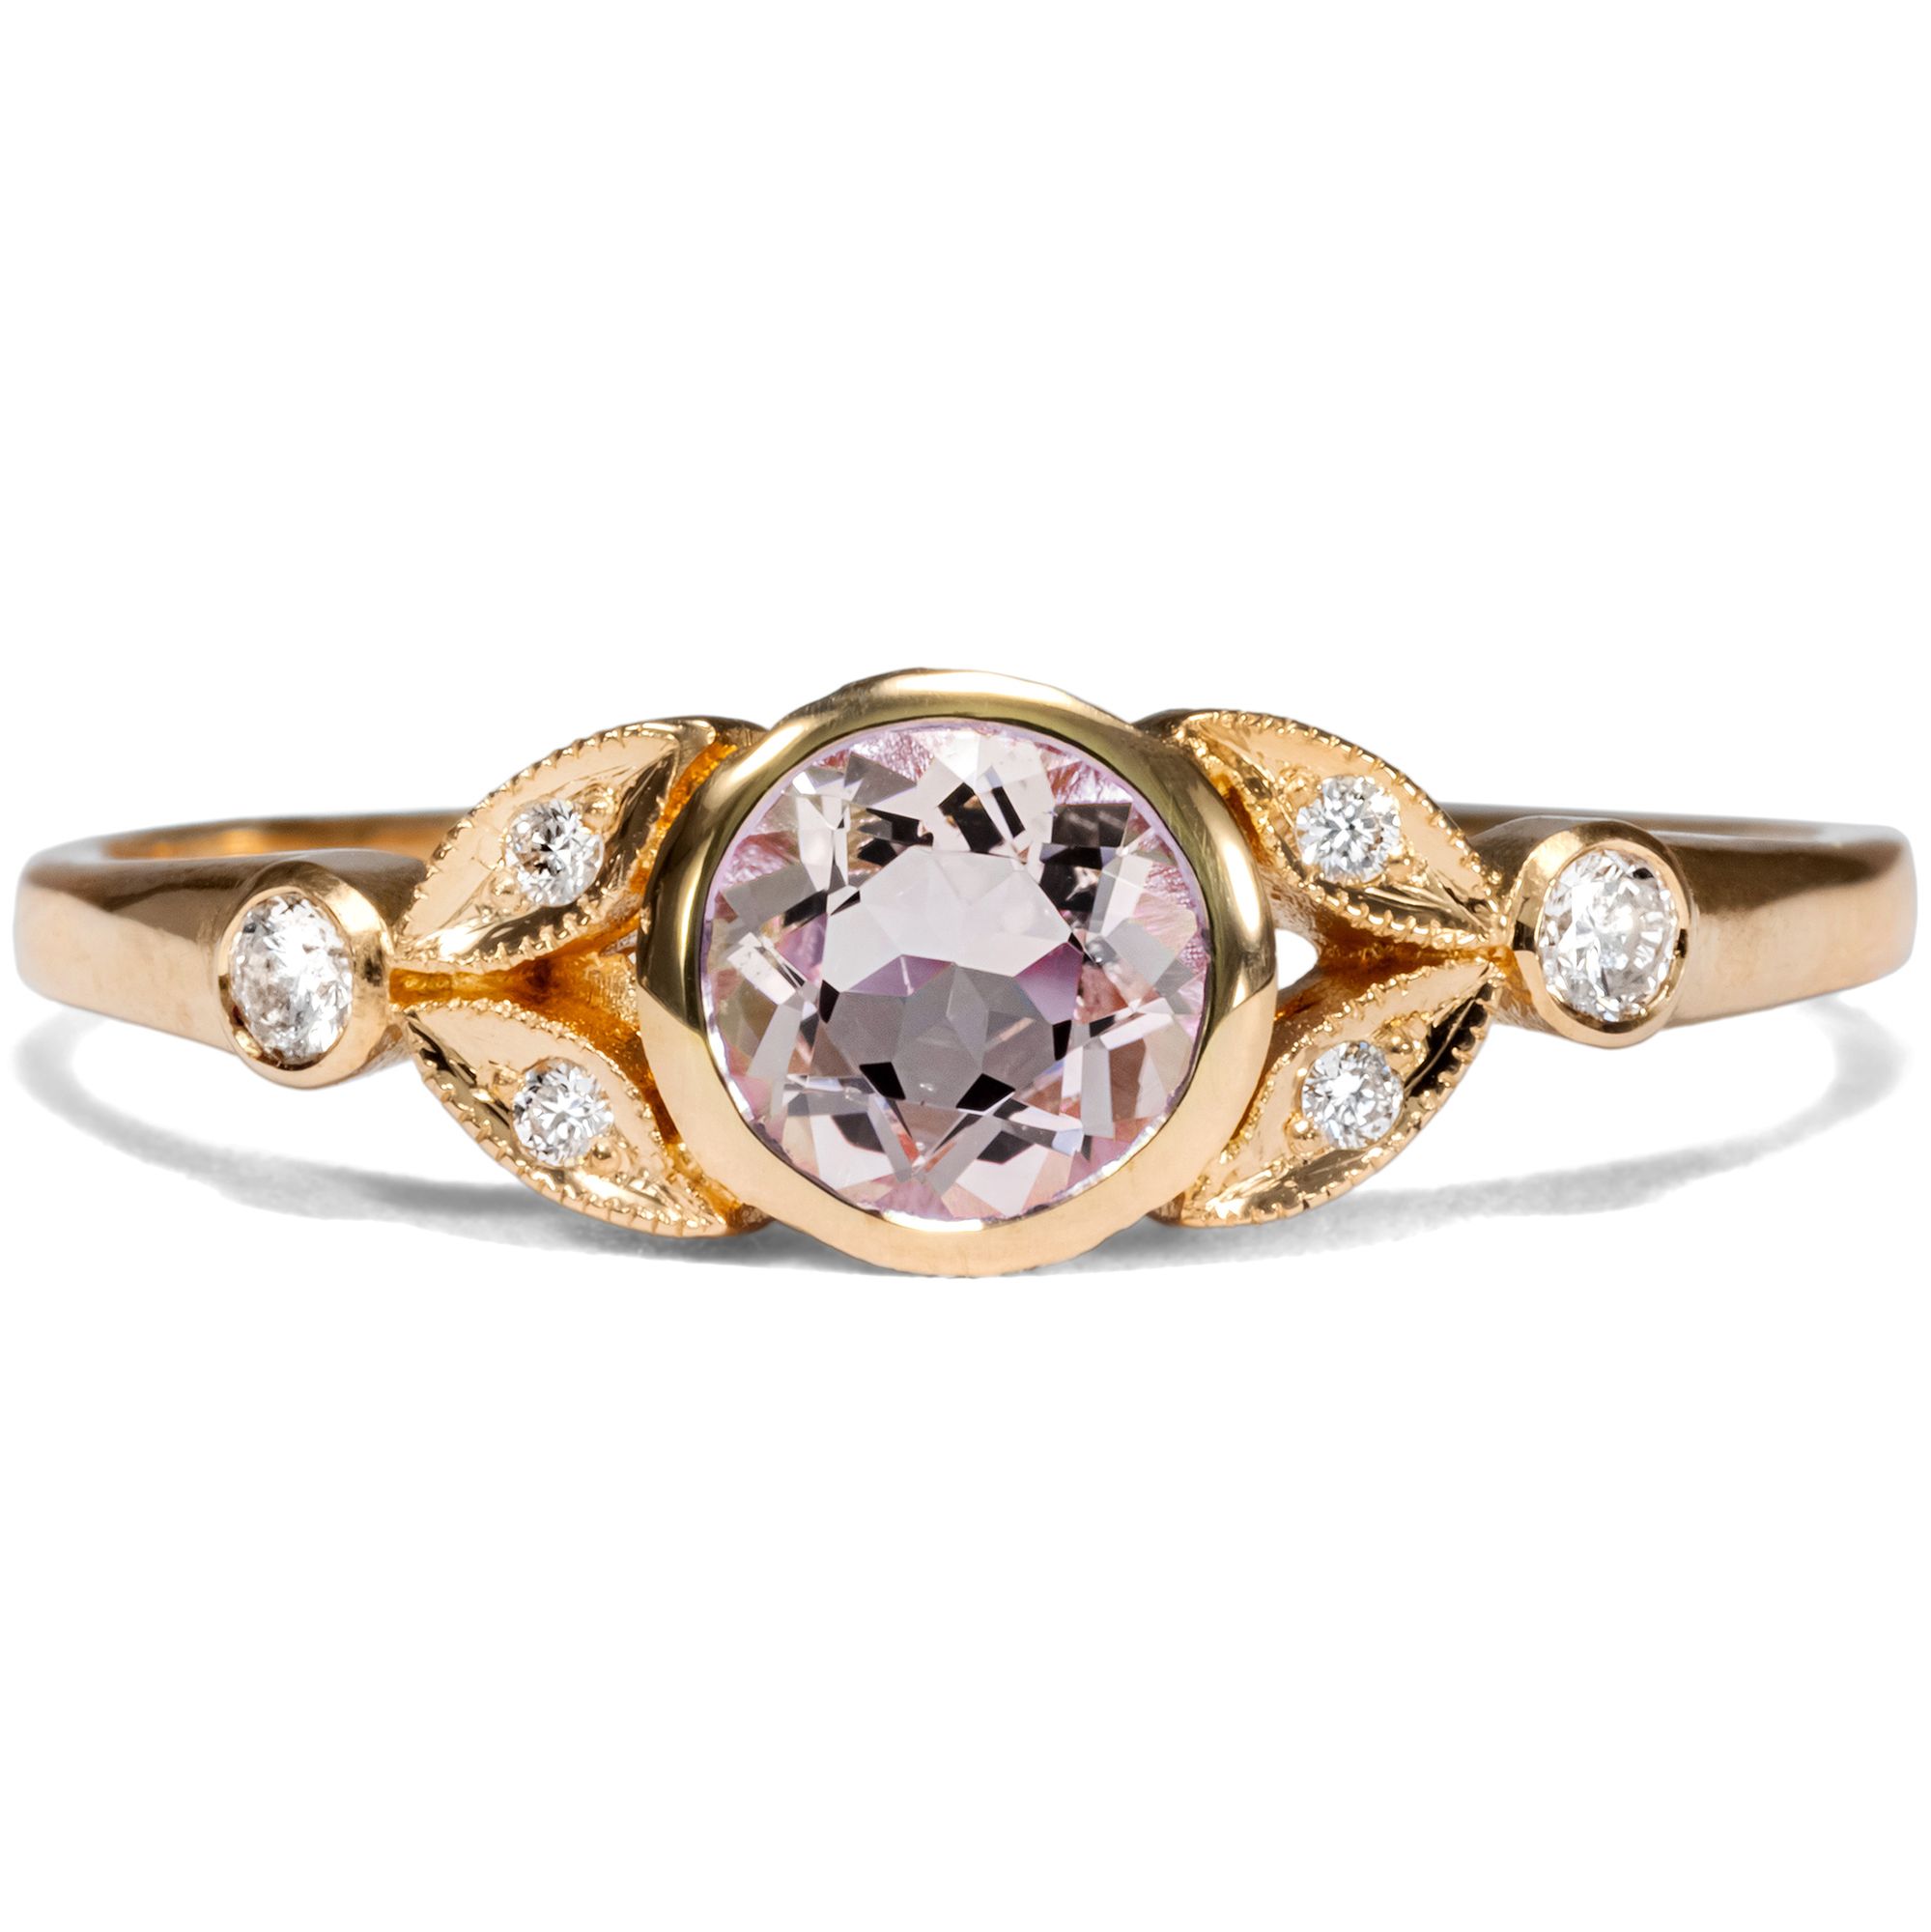 Bezaubernder Ring mit Morganit & Diamanten in Roségold aus unserer Werkstatt